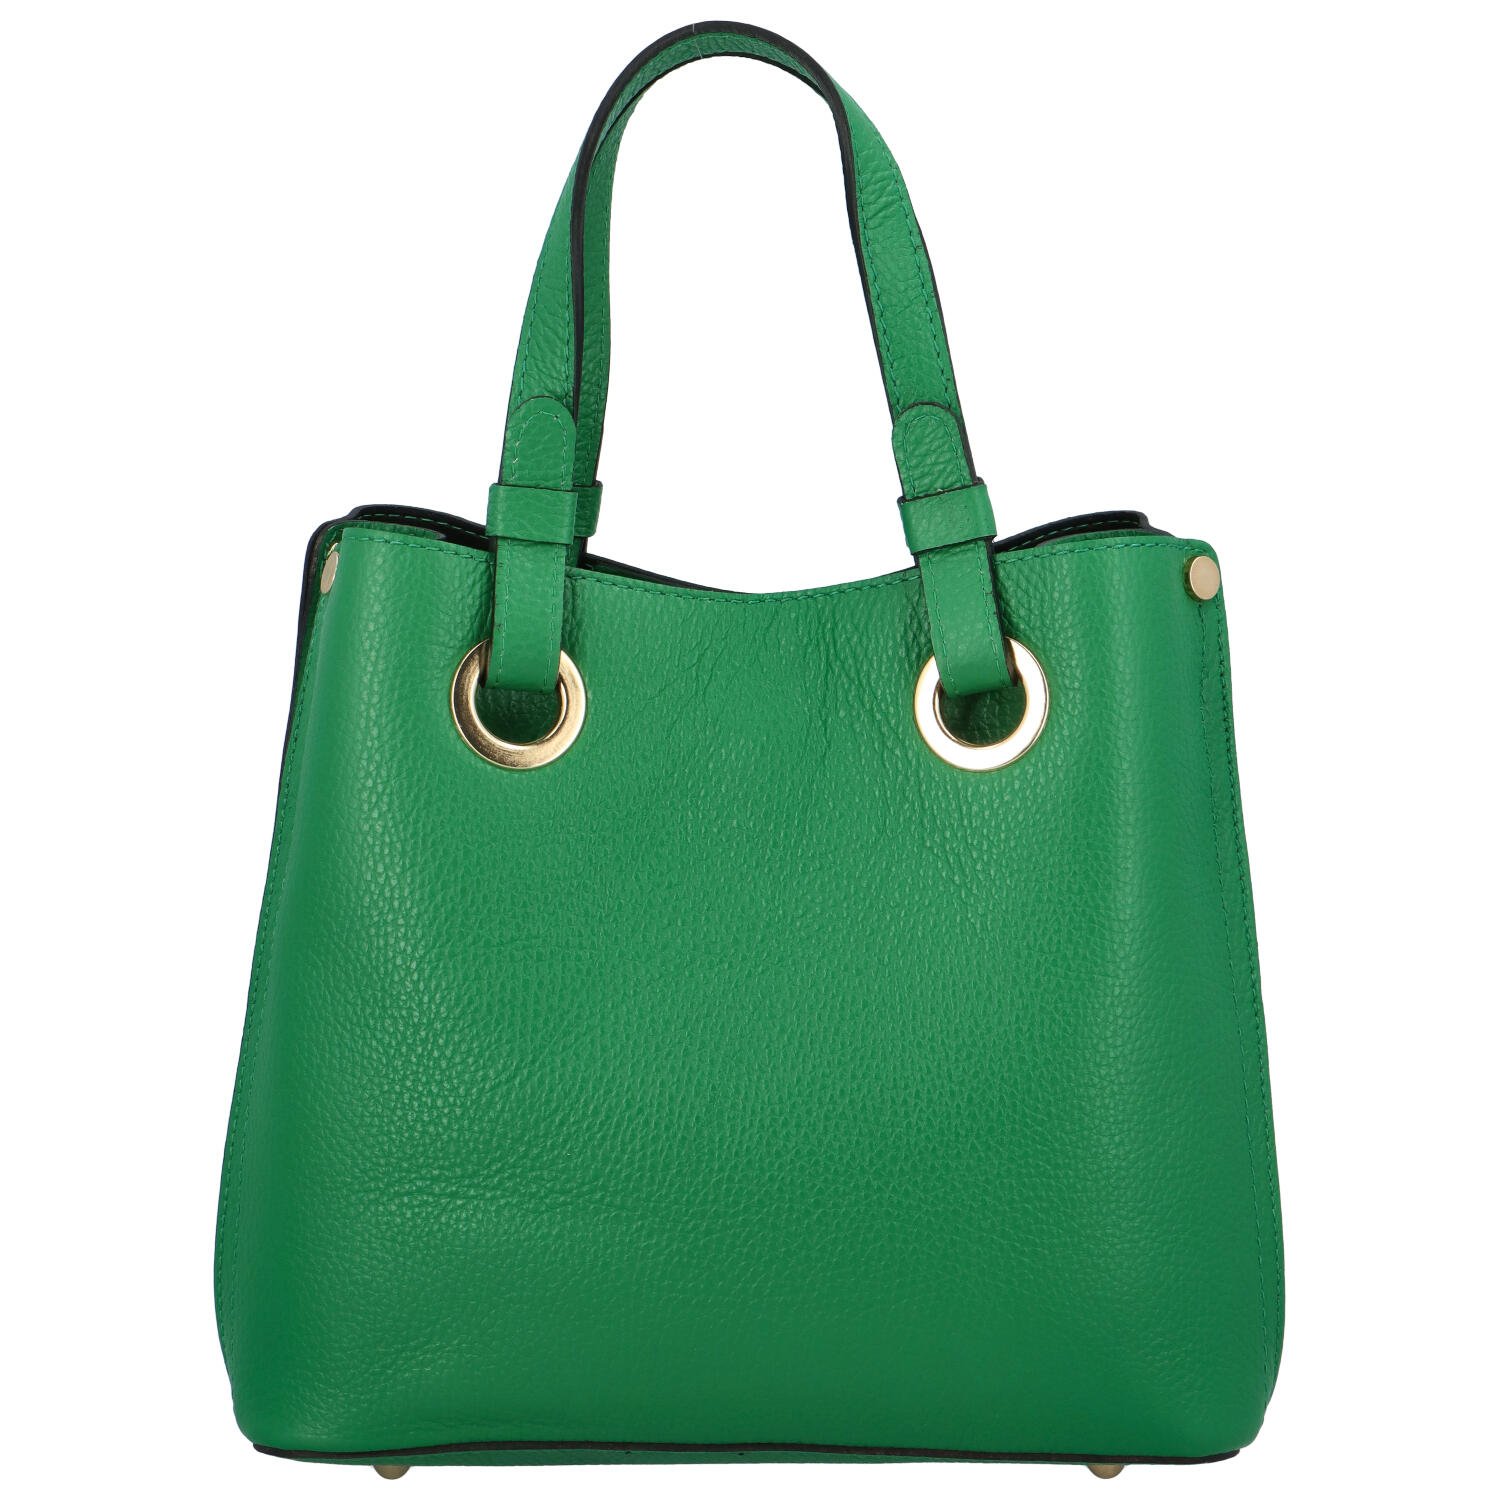 Dámská kožená kabelka zelená - Delami Roseli